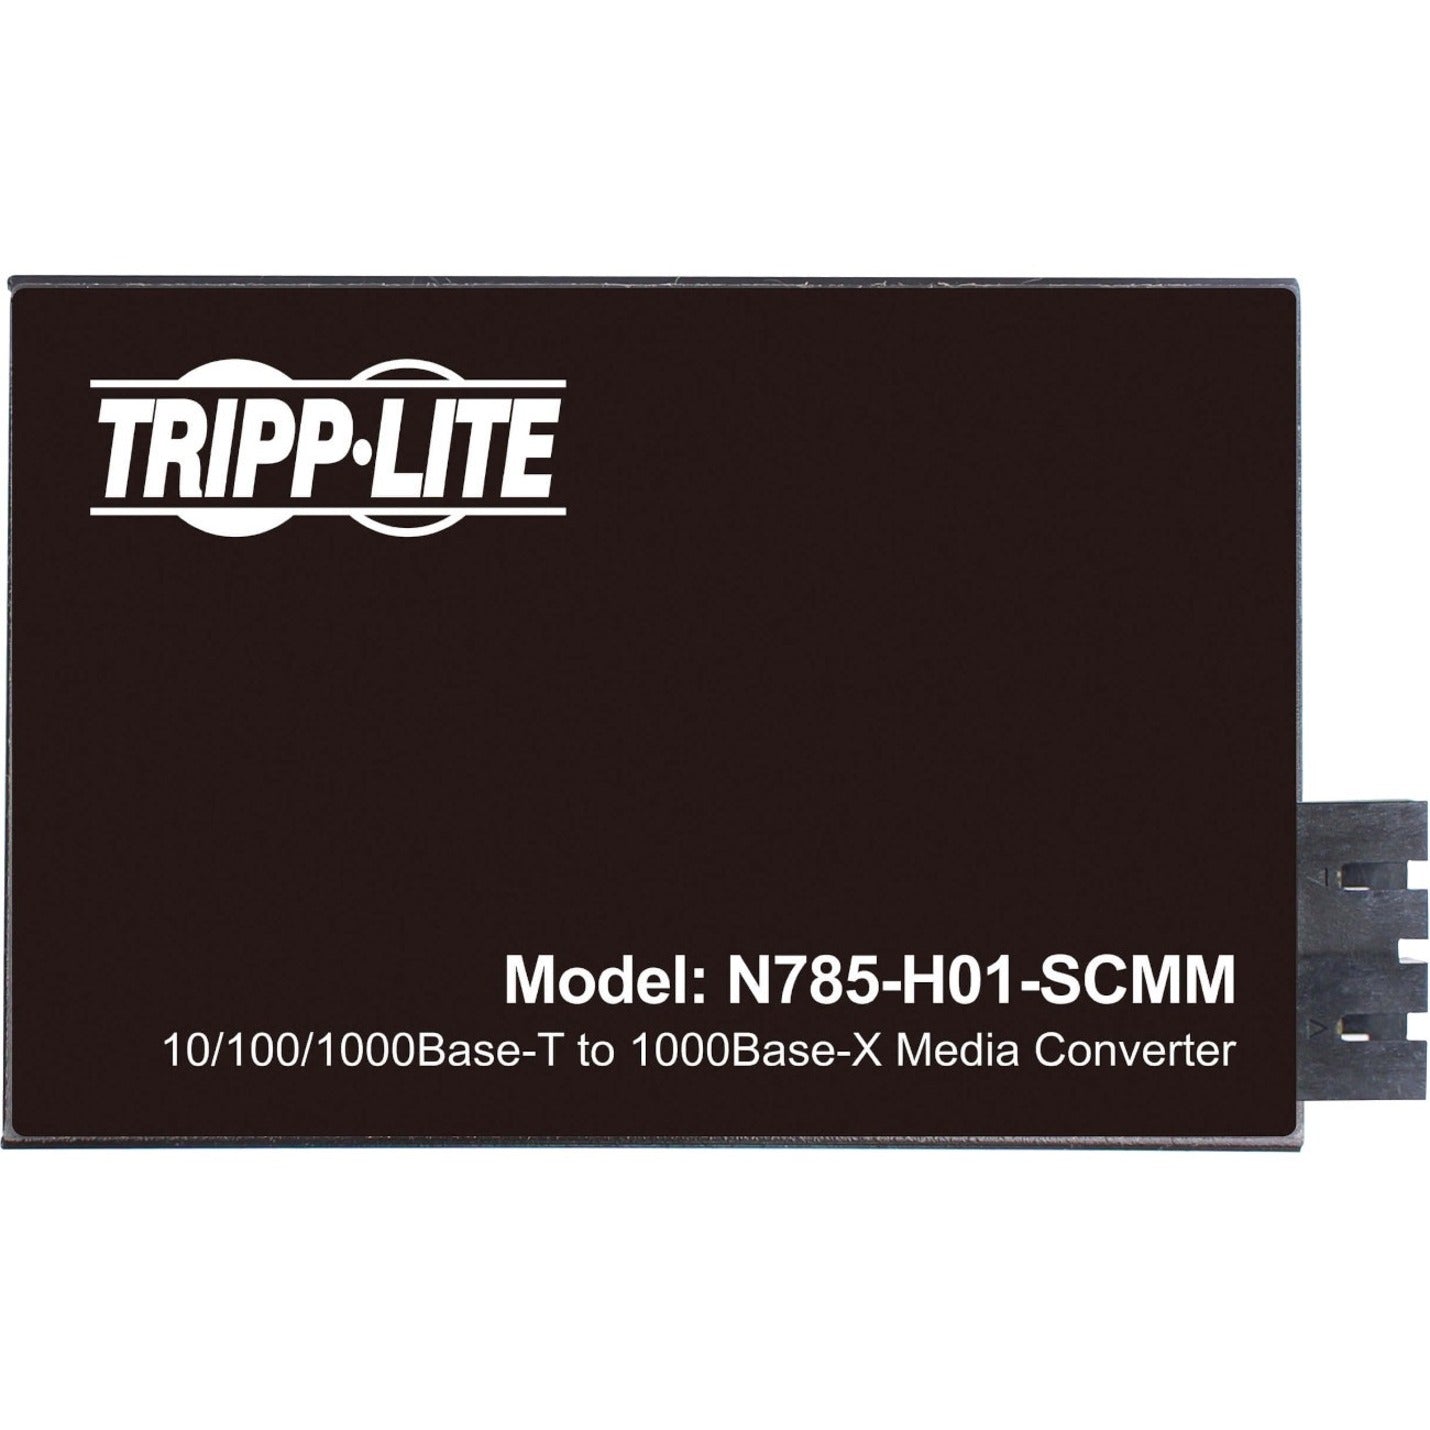 Tripp Lite N785-H01-SCMM Transceiver/Media Converter, Gigabit Copper to Fiber, Multi-mode, 1640.42 ft Distance Supported